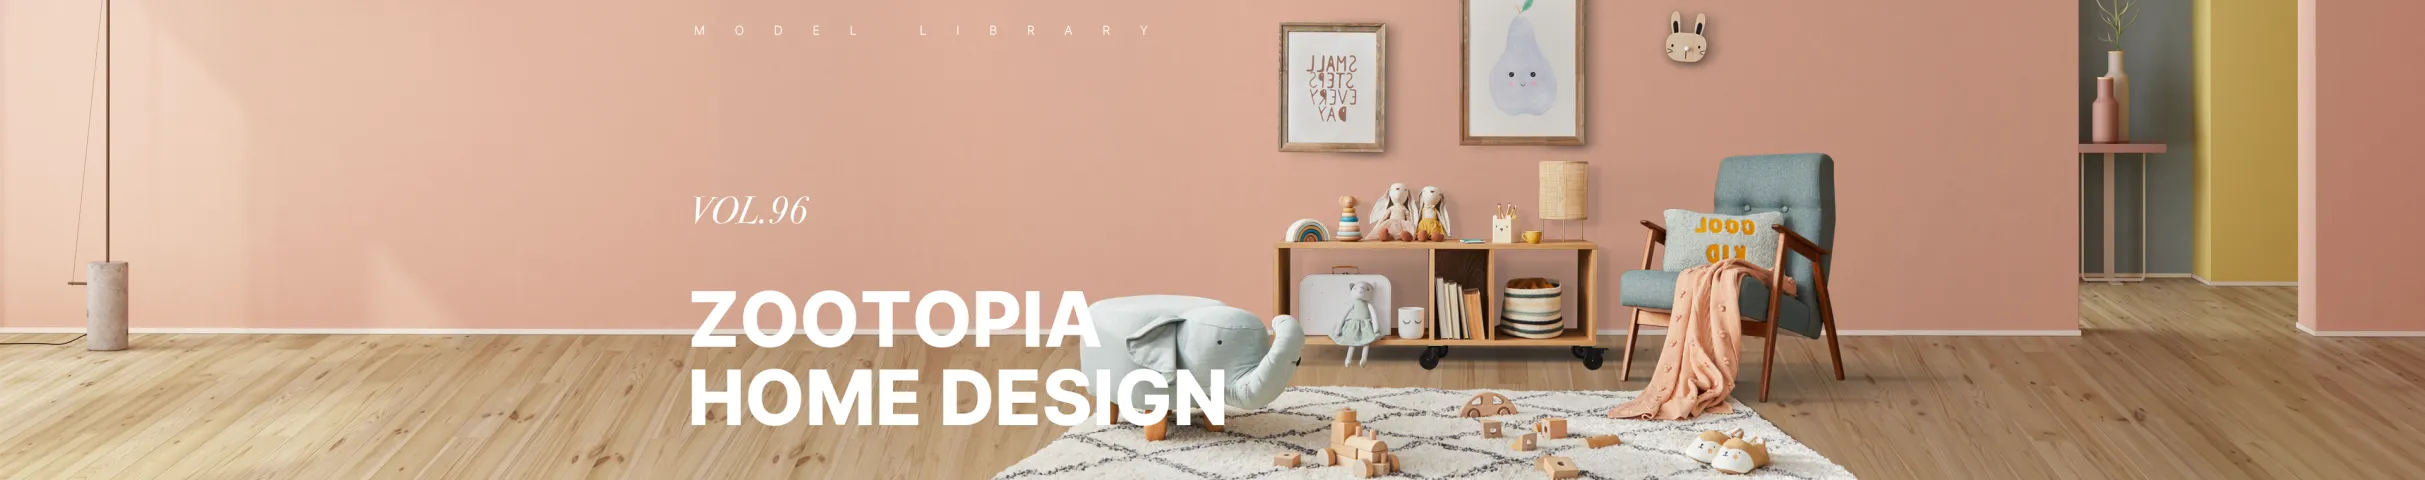 Zootopia Home Design